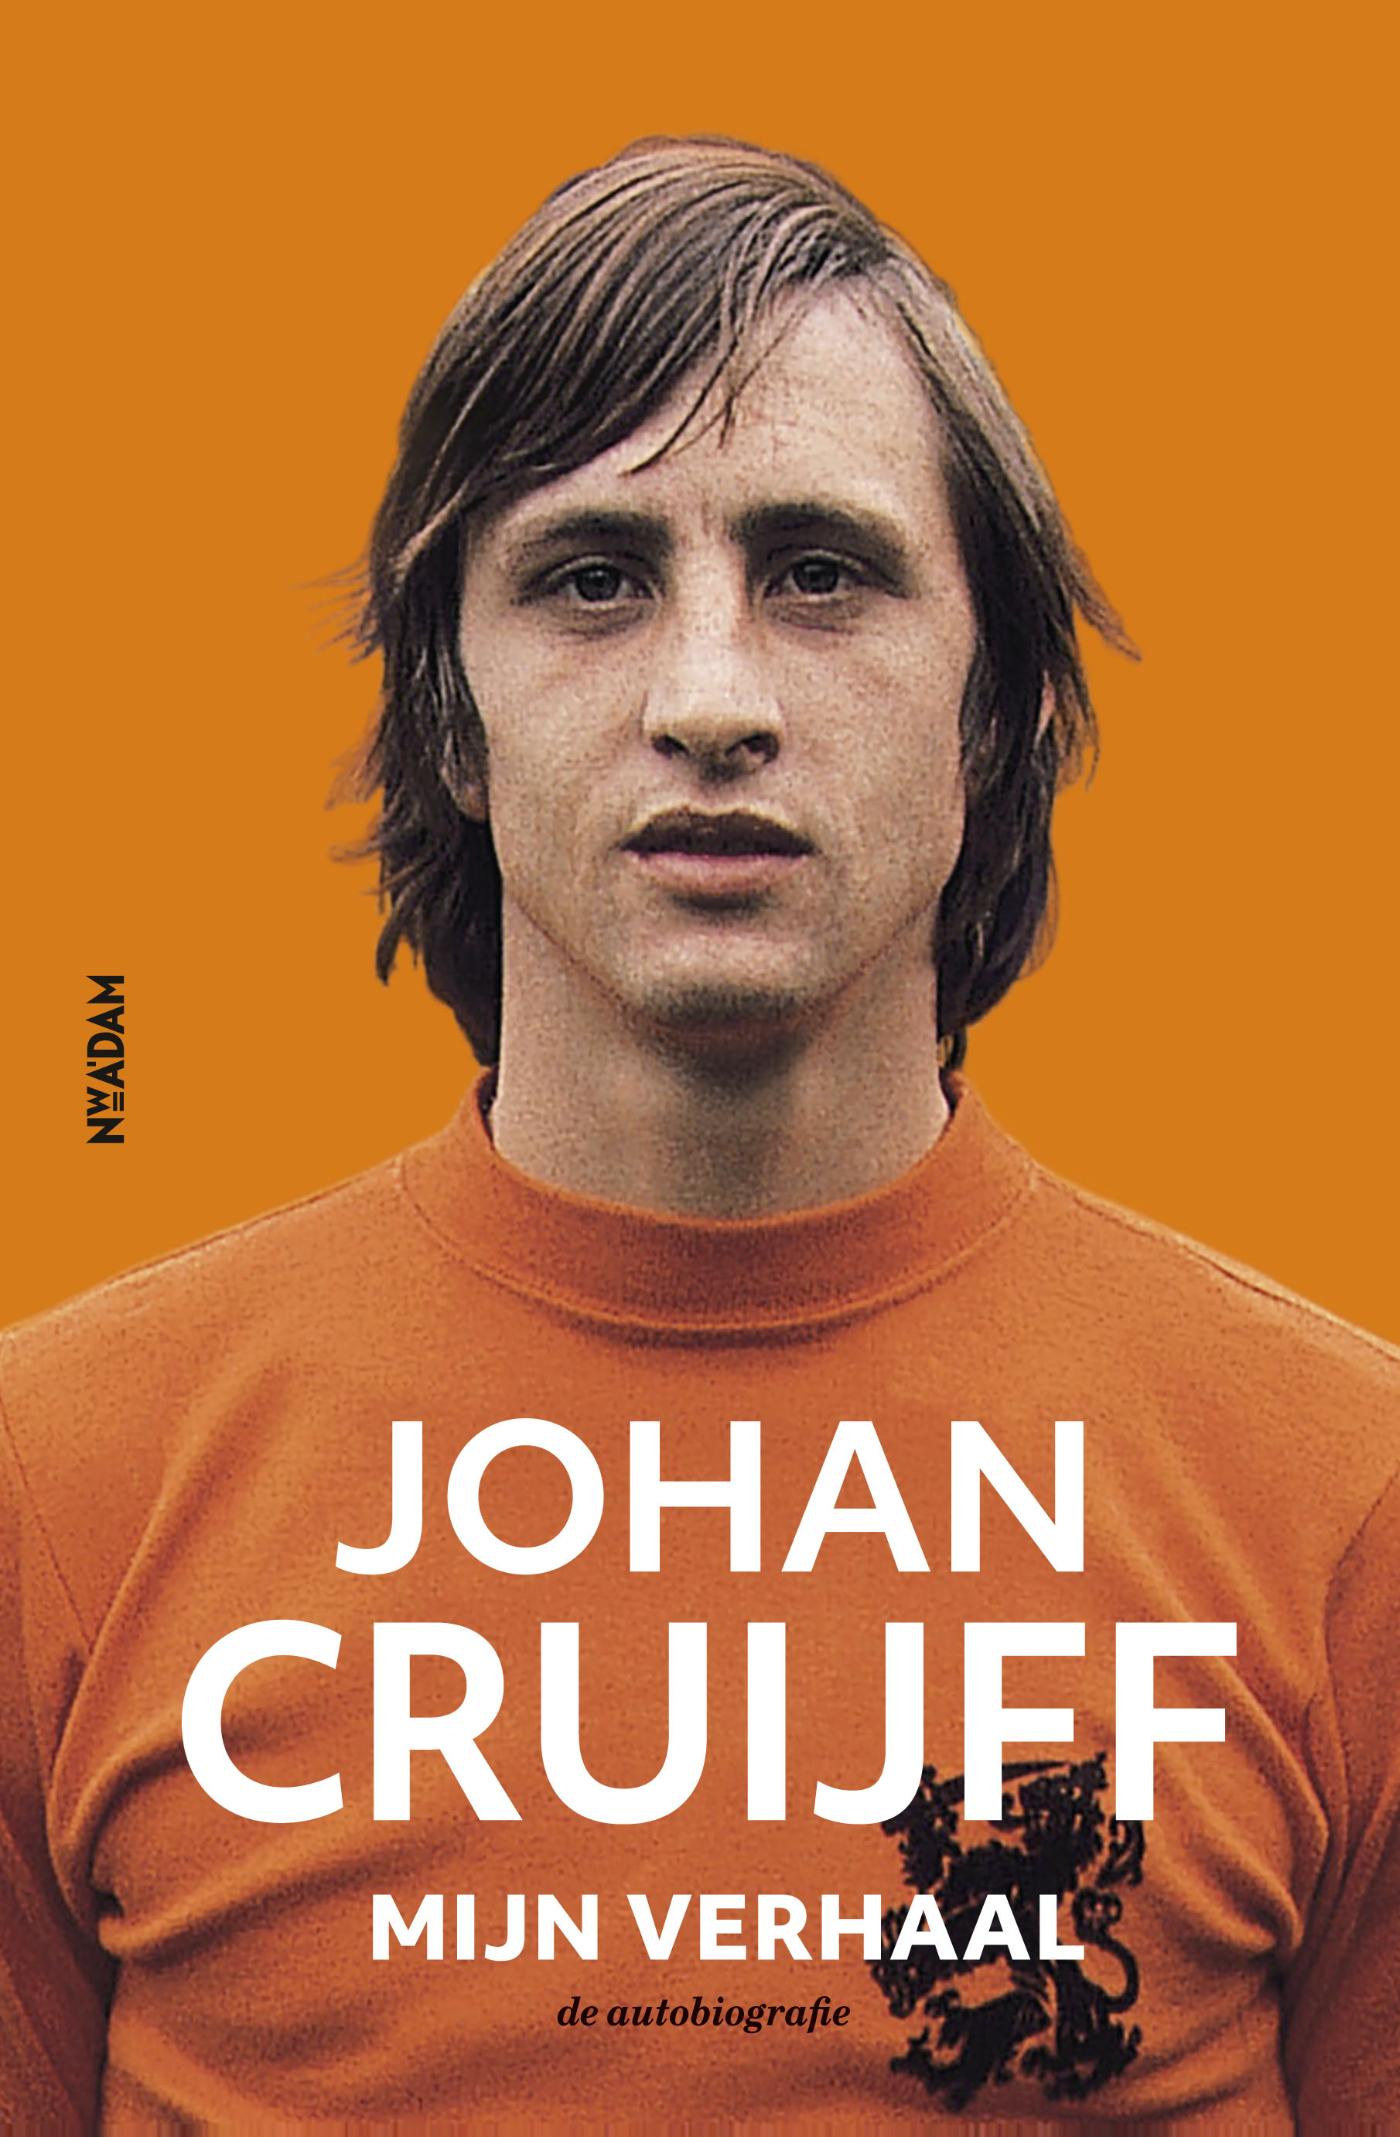 Johan Cruijff - mijn verhaal (Ebook)